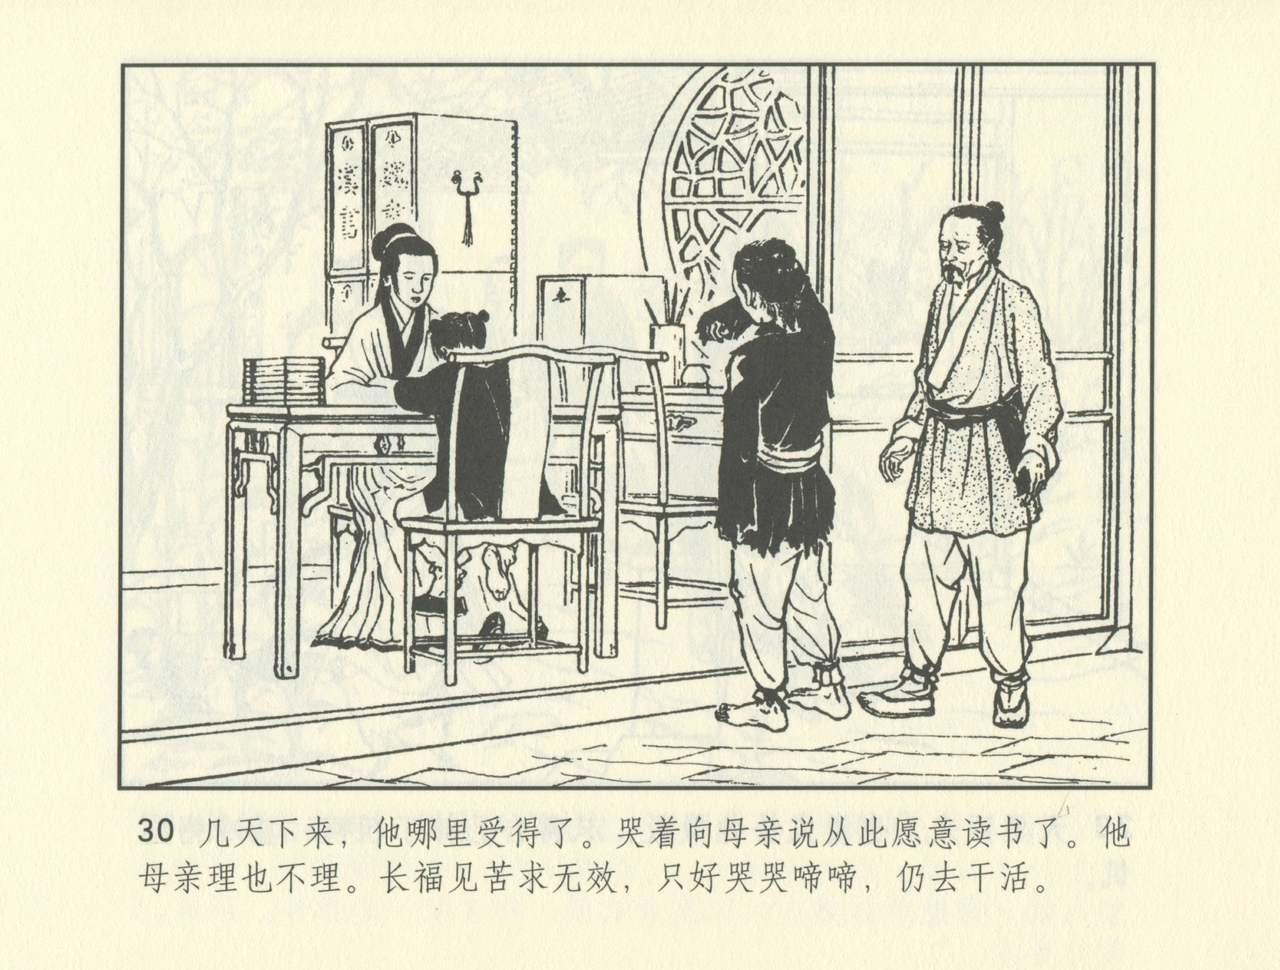 聊斋志异 张玮等绘 天津人民美术出版社 卷二十一 ~ 三十 502